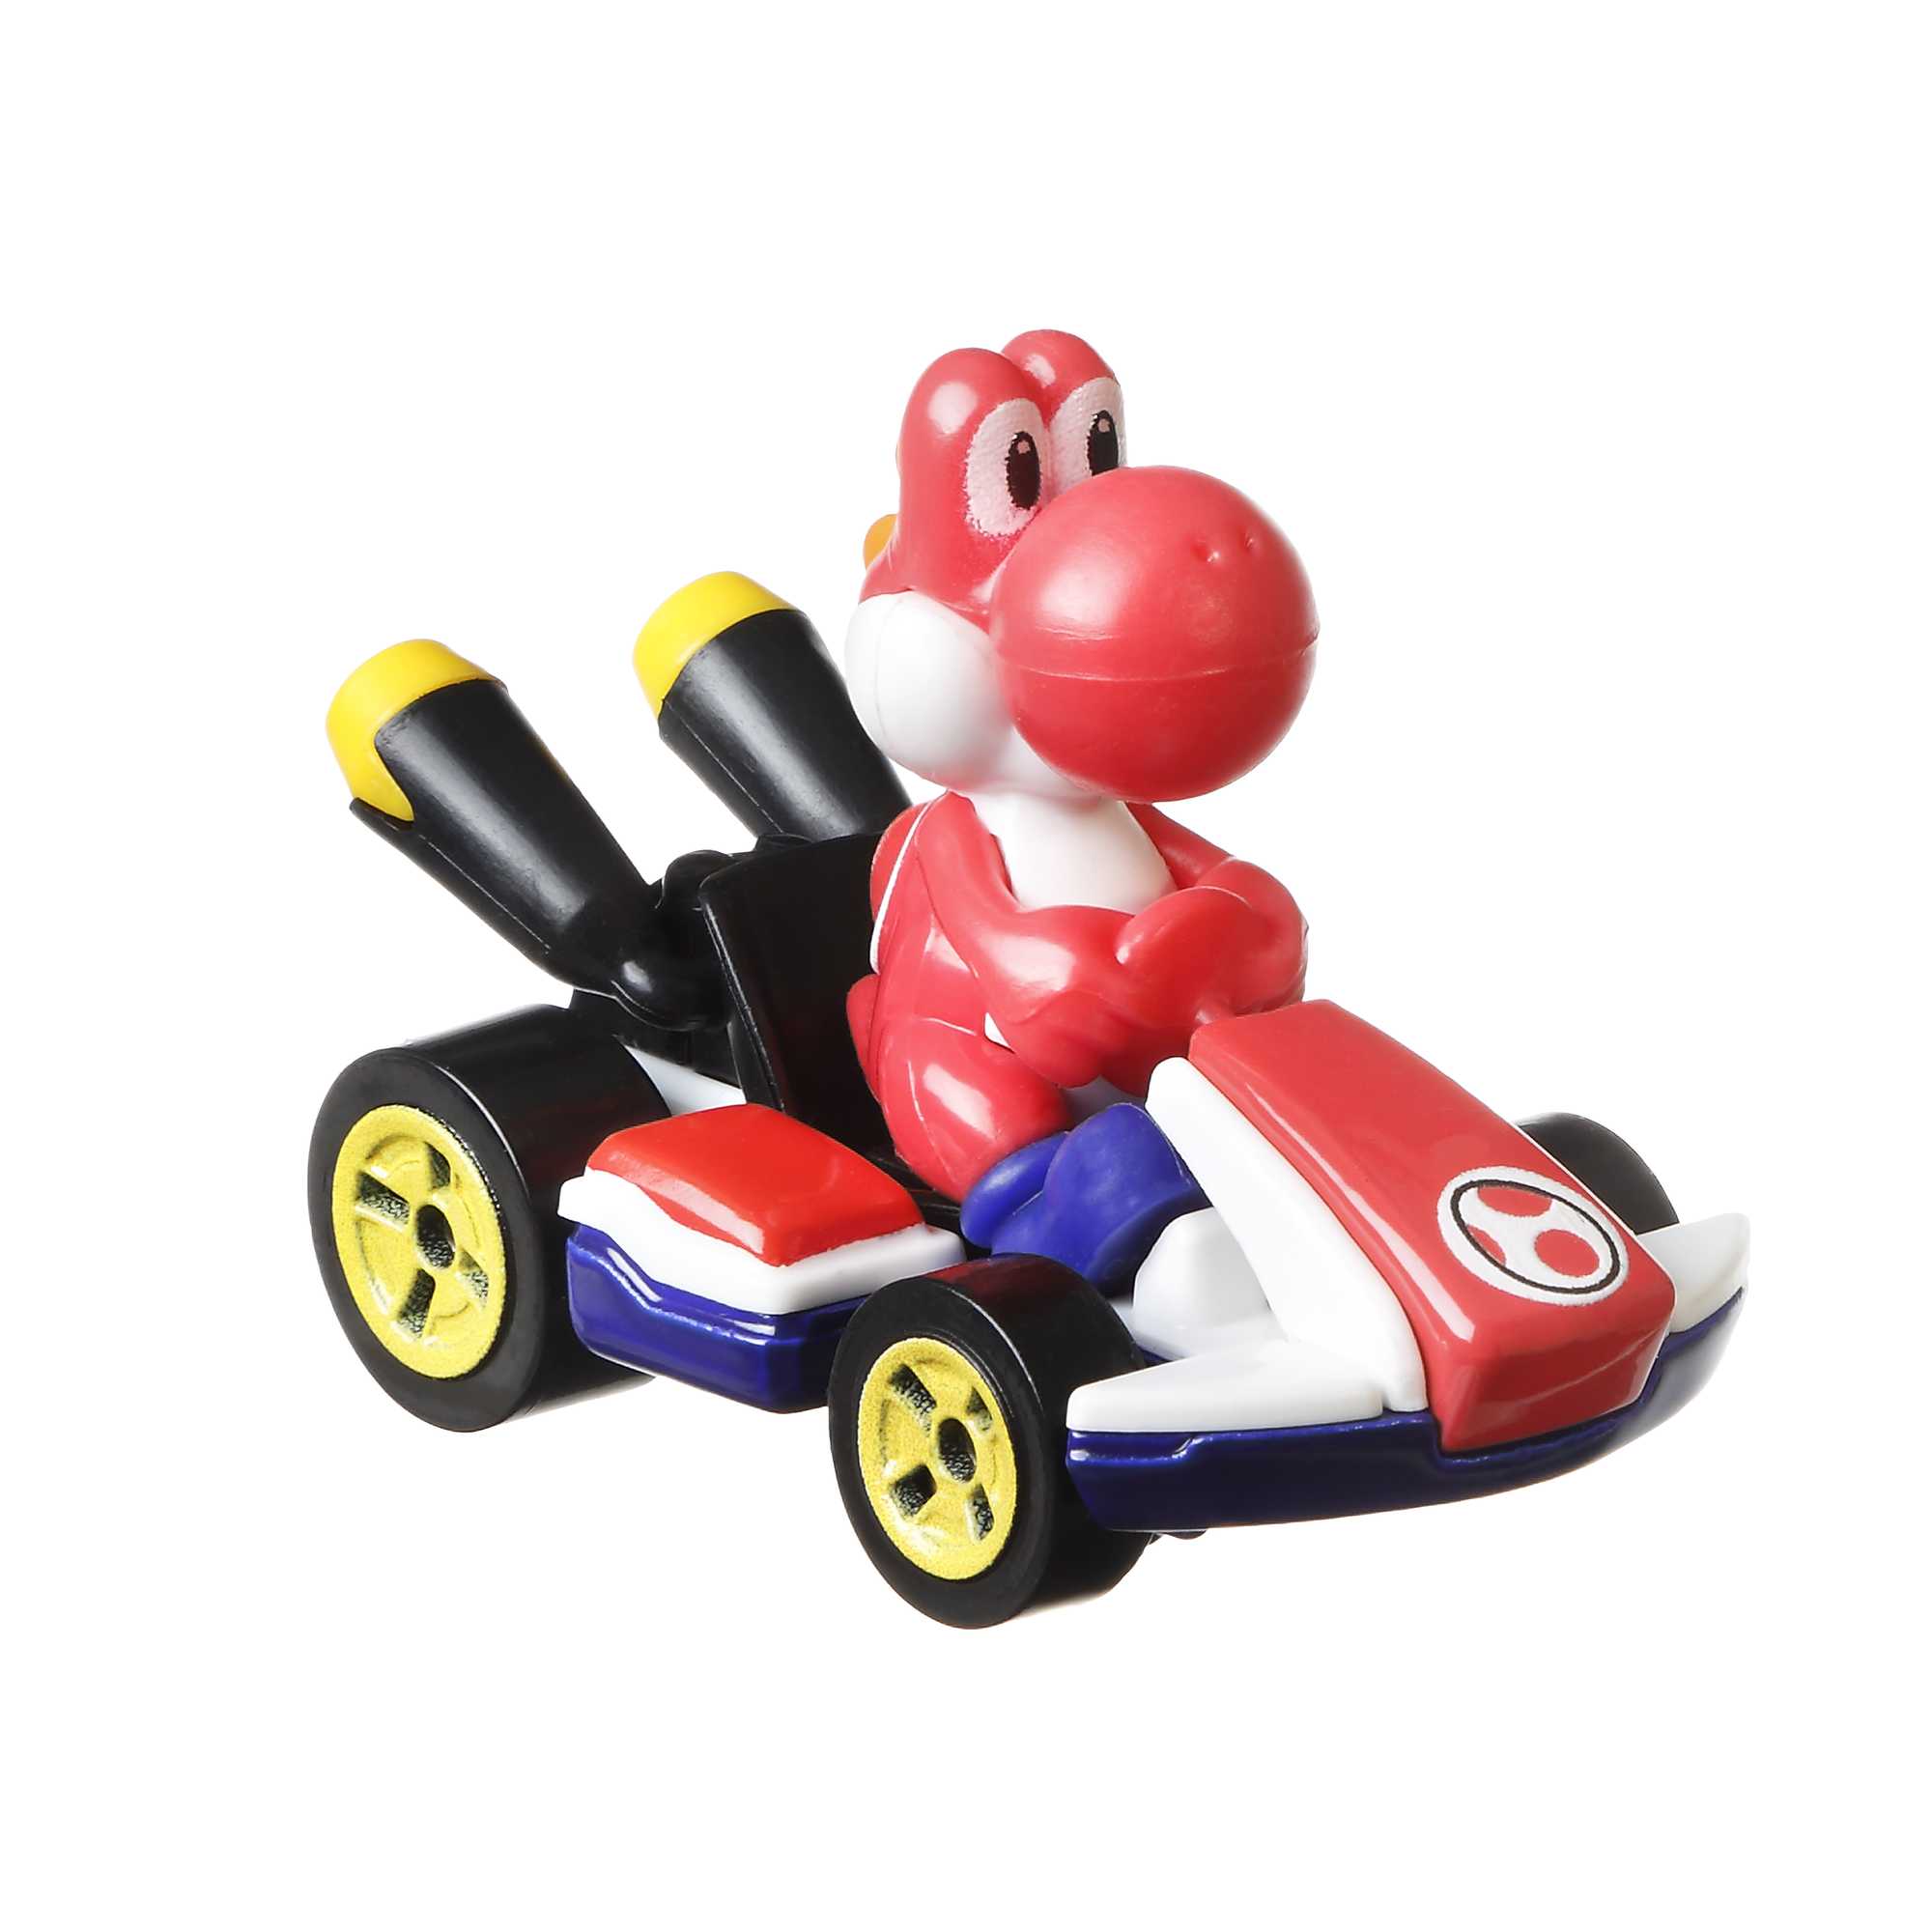 Mattel-Hot Wheels Mario Kart 2022-GBG25-Red Yoshi Standard Kart-Legacy Toys